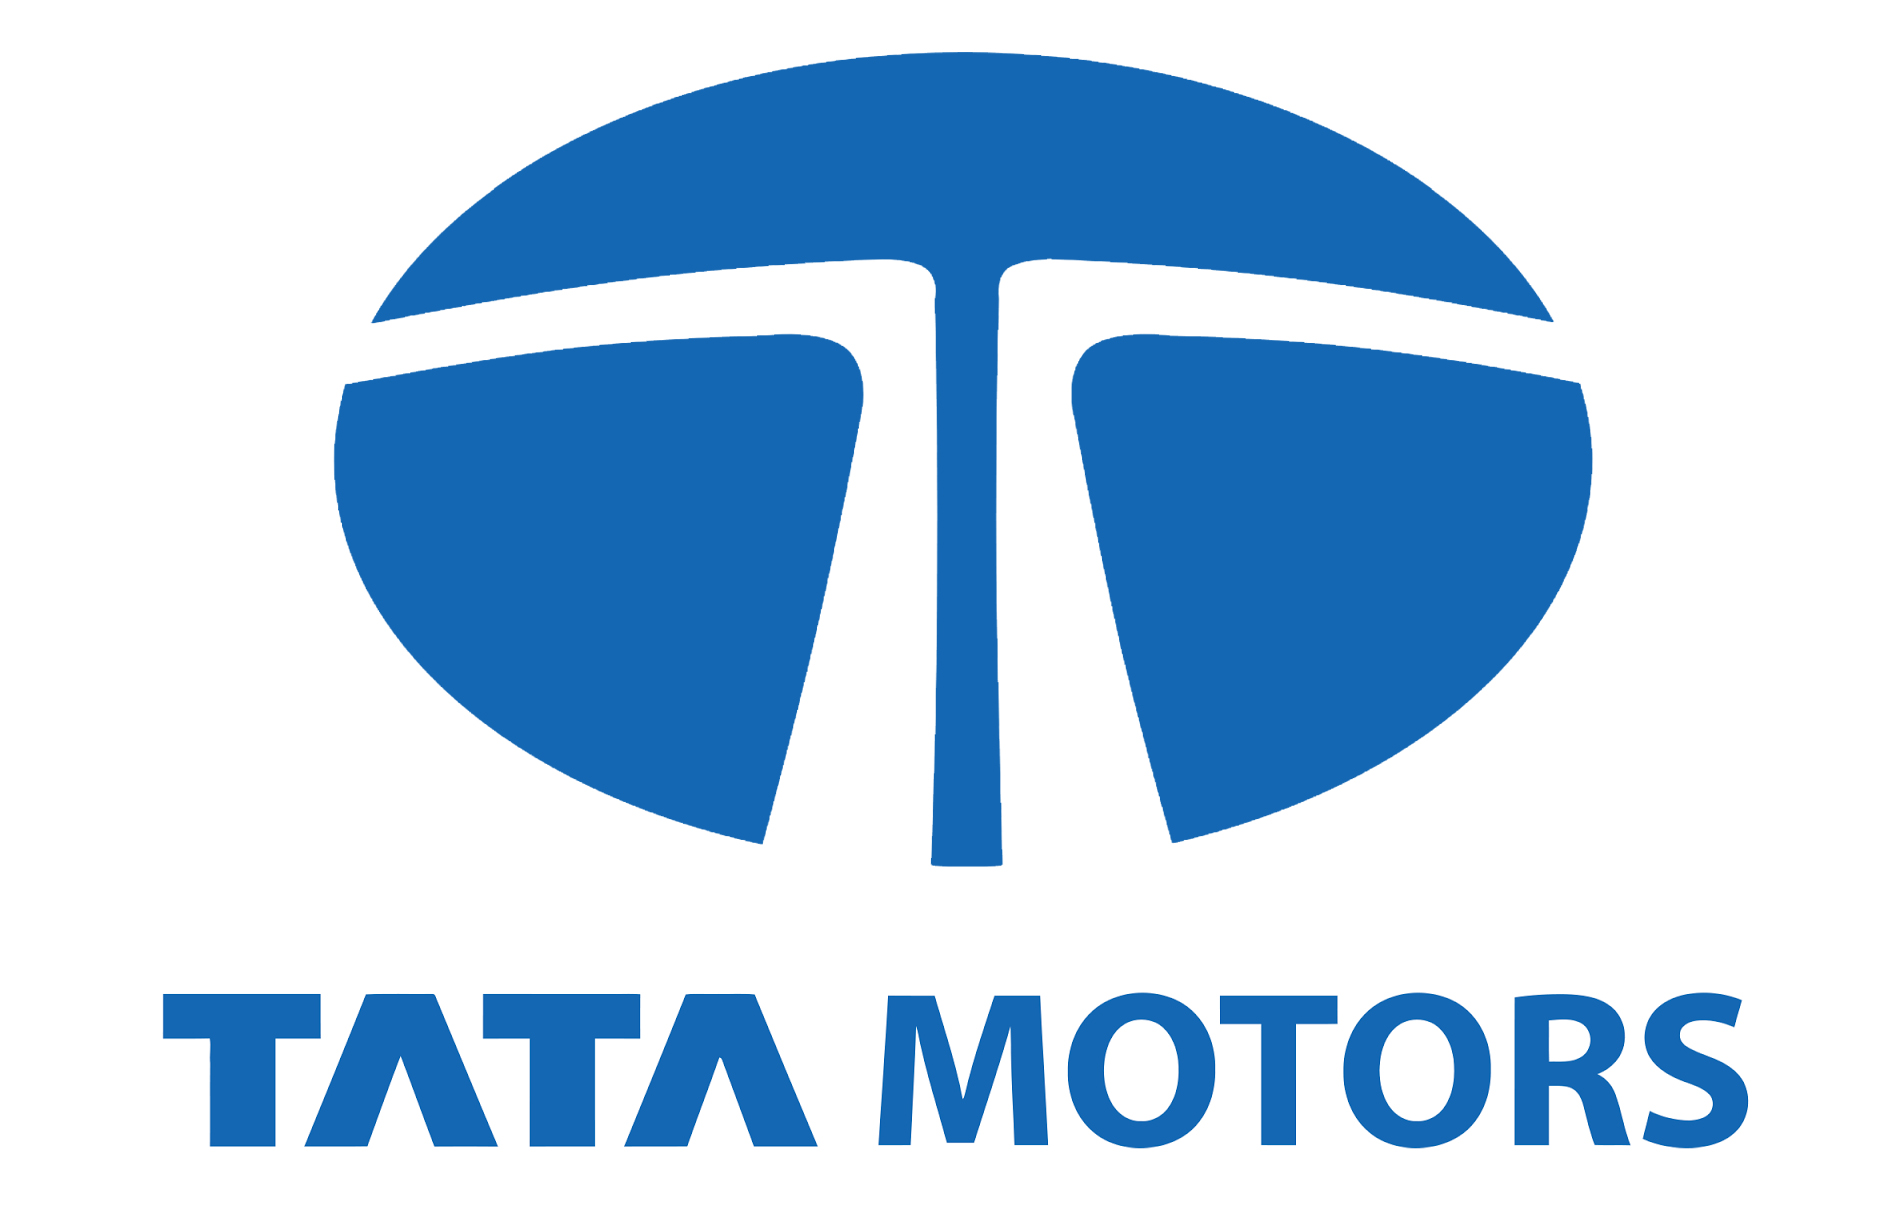 Tata Motors Cars Showroom - Falcon Motors|Show Room|Automotive